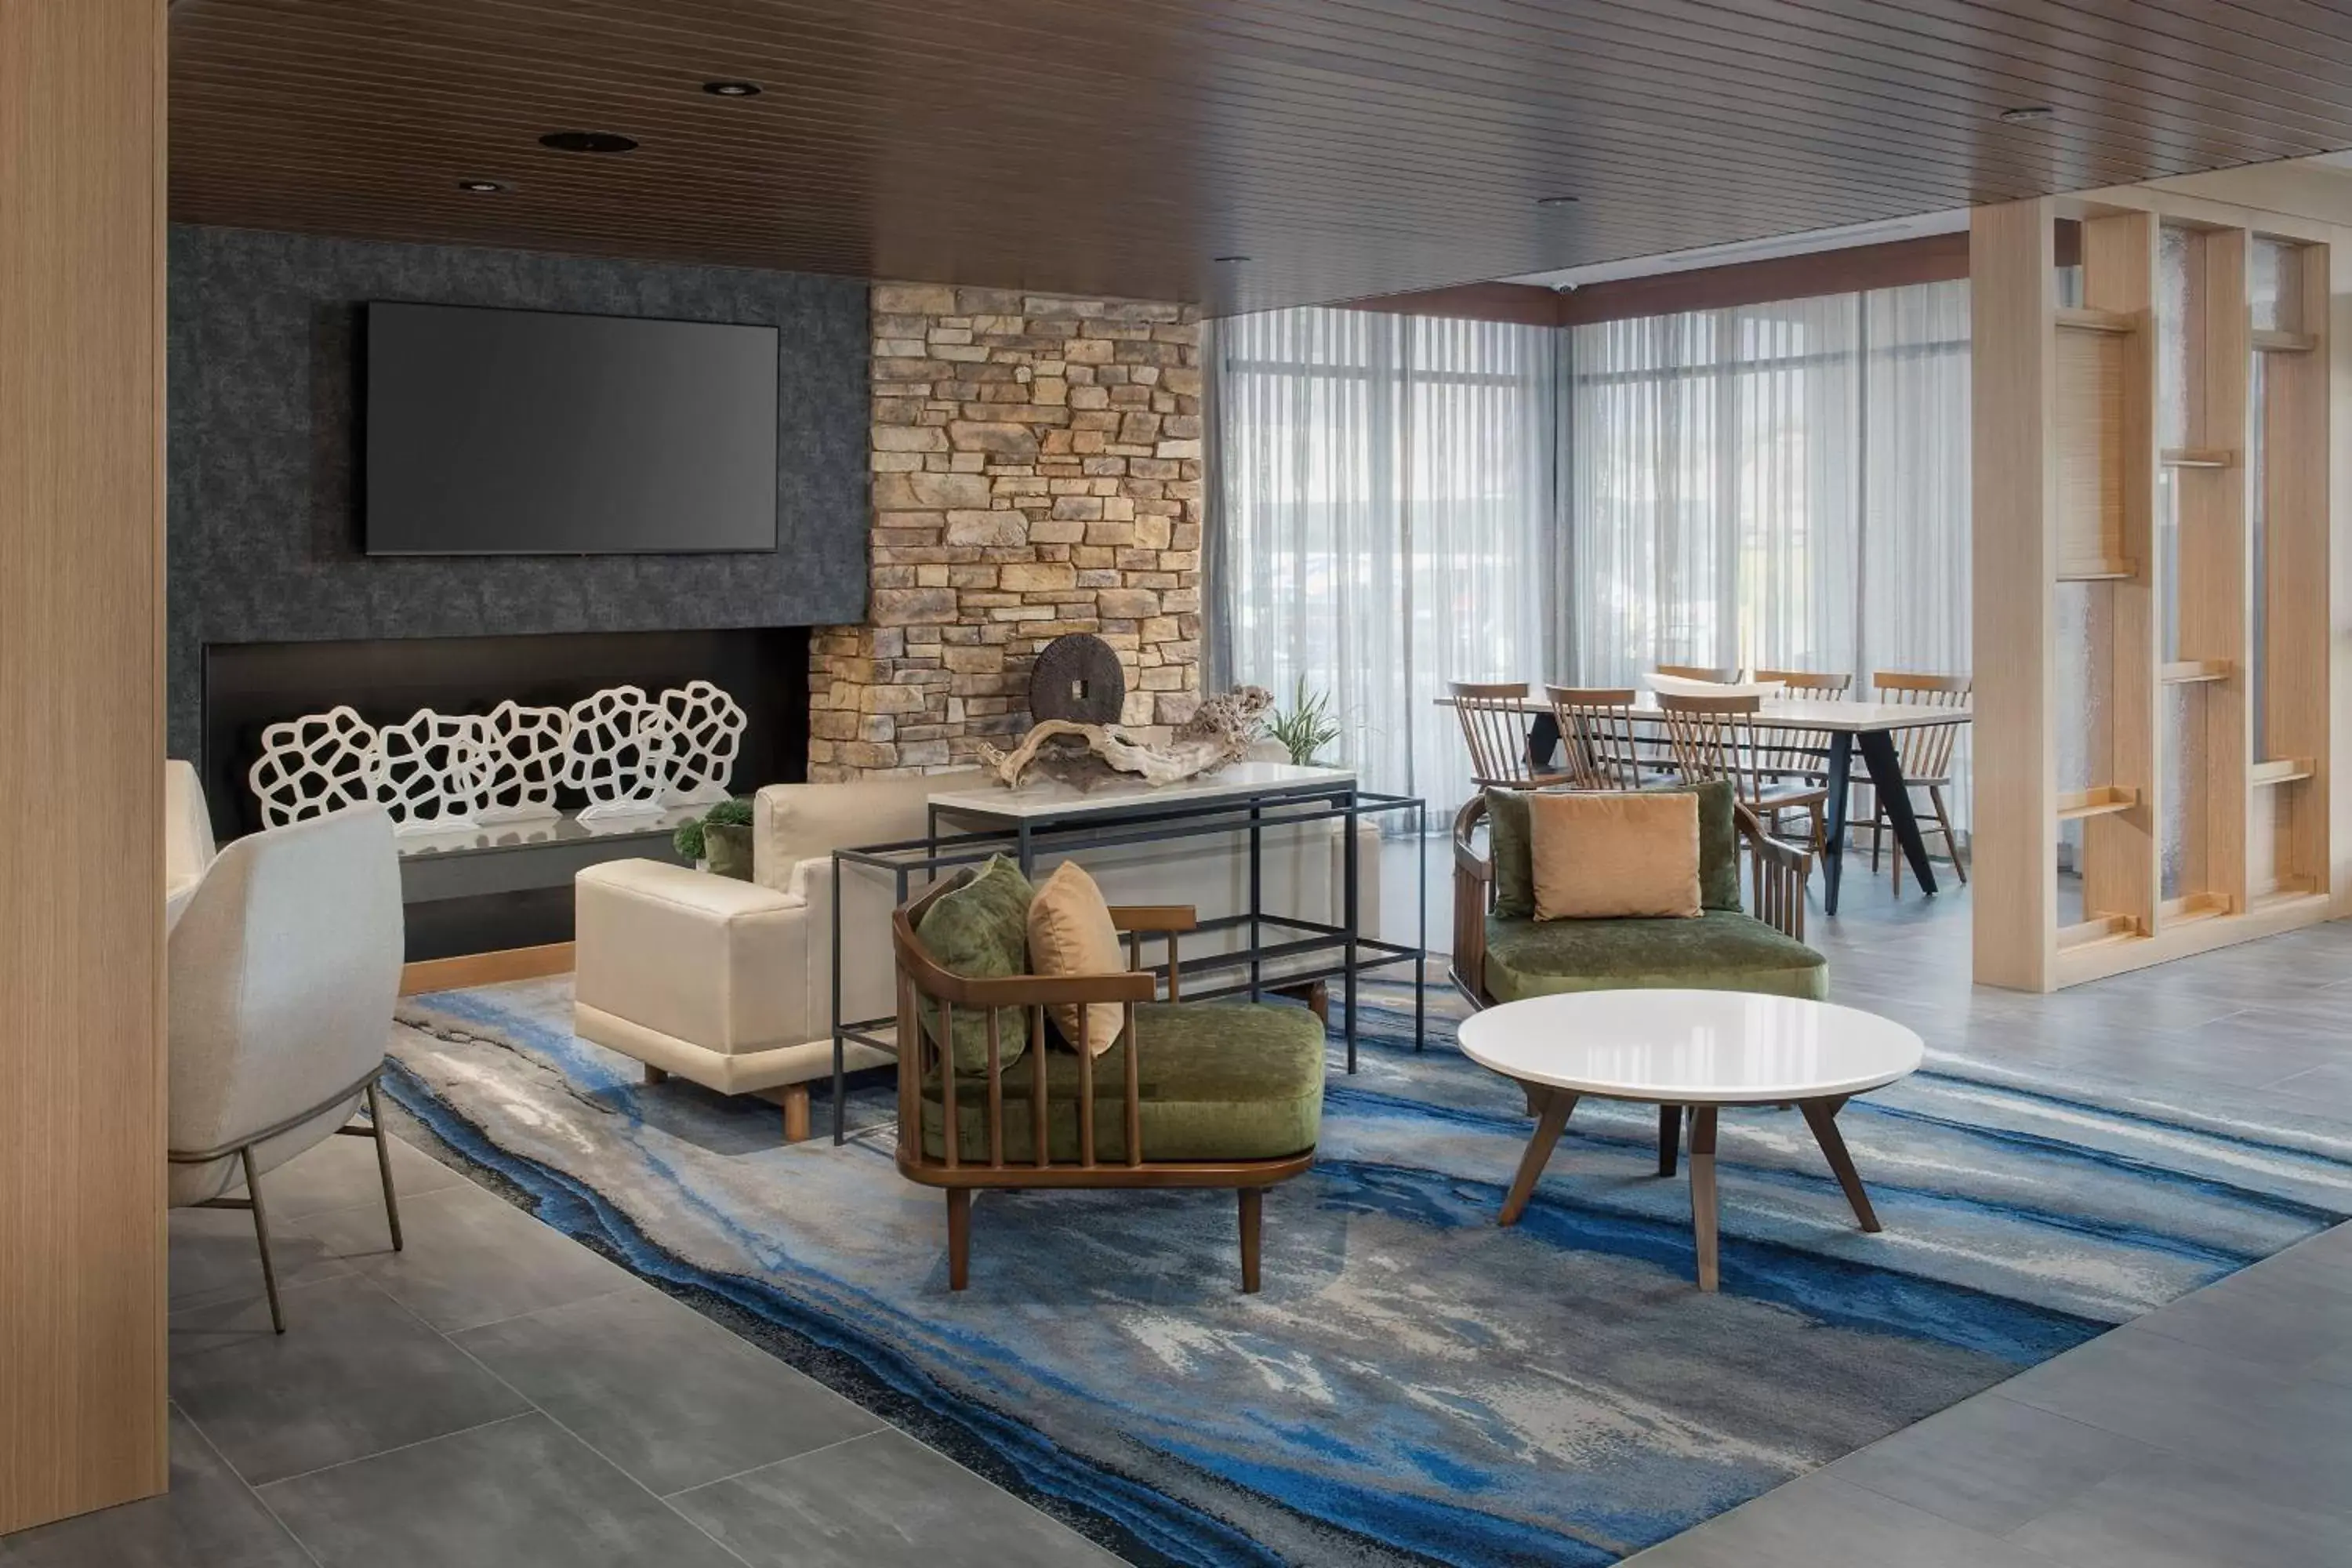 Lobby or reception in Fairfield Inn & Suites by Marriott Santa Rosa Rohnert Park